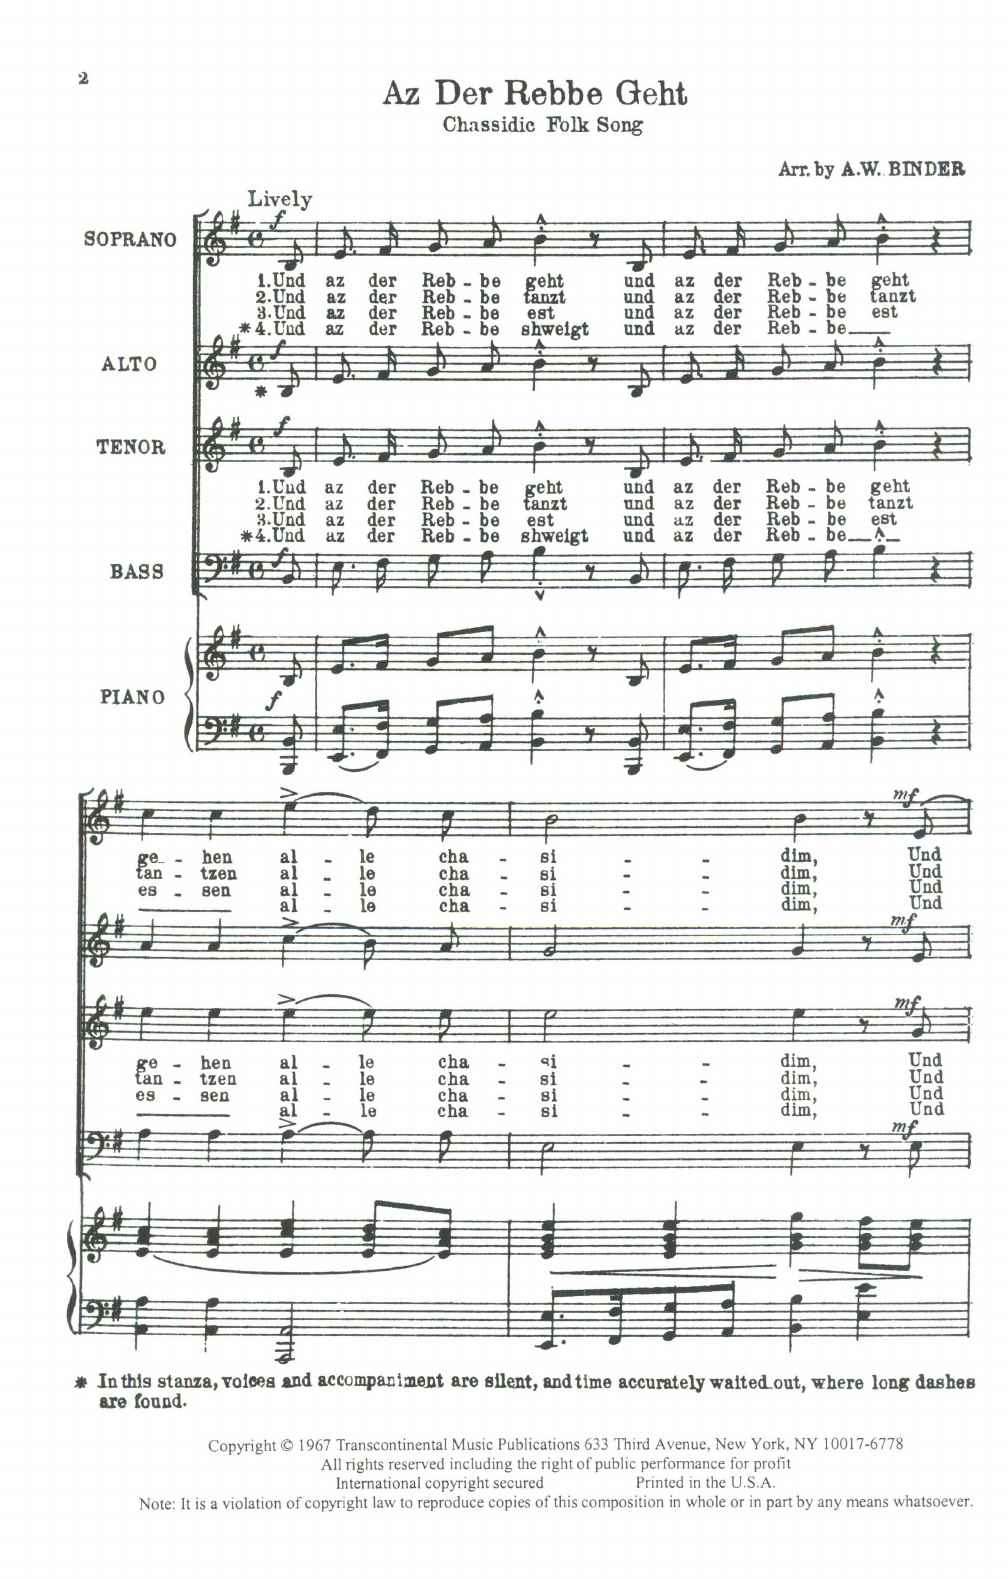 Download Chassidic Folk Song Az Der Rebbe Geht (arr. A.W. Binder) Sheet Music